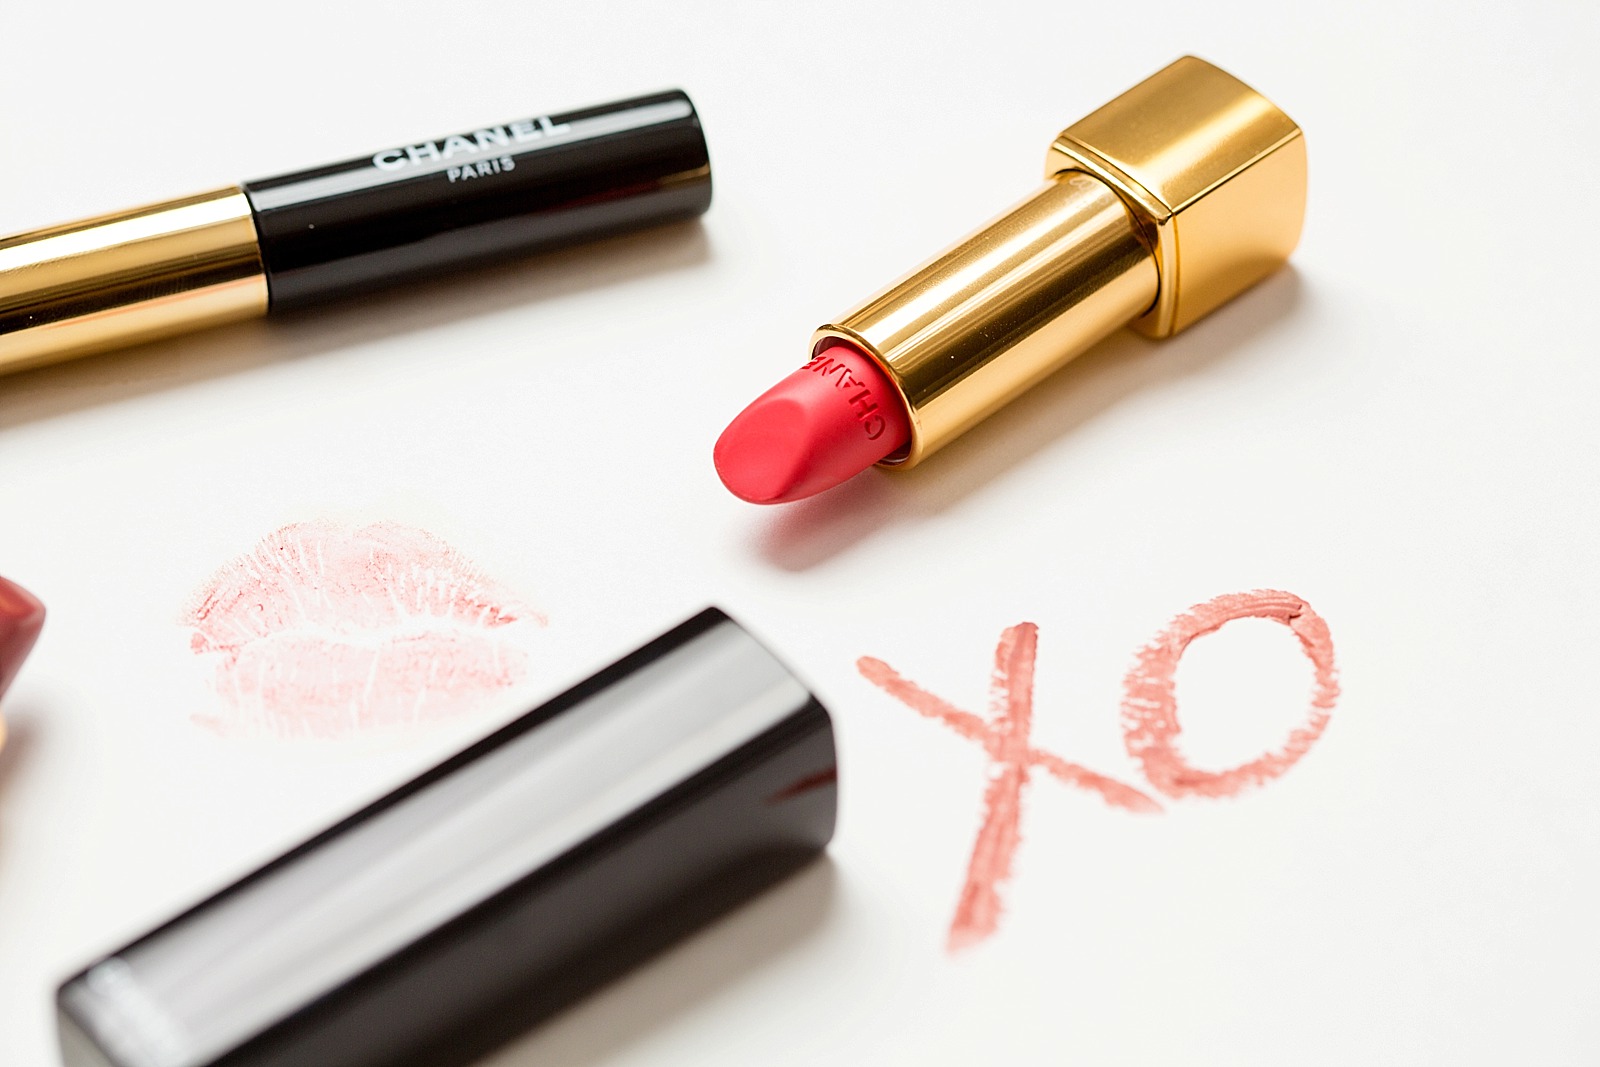 Chanel Rouge Allure Velvet Velvety & Glowing Lipstick